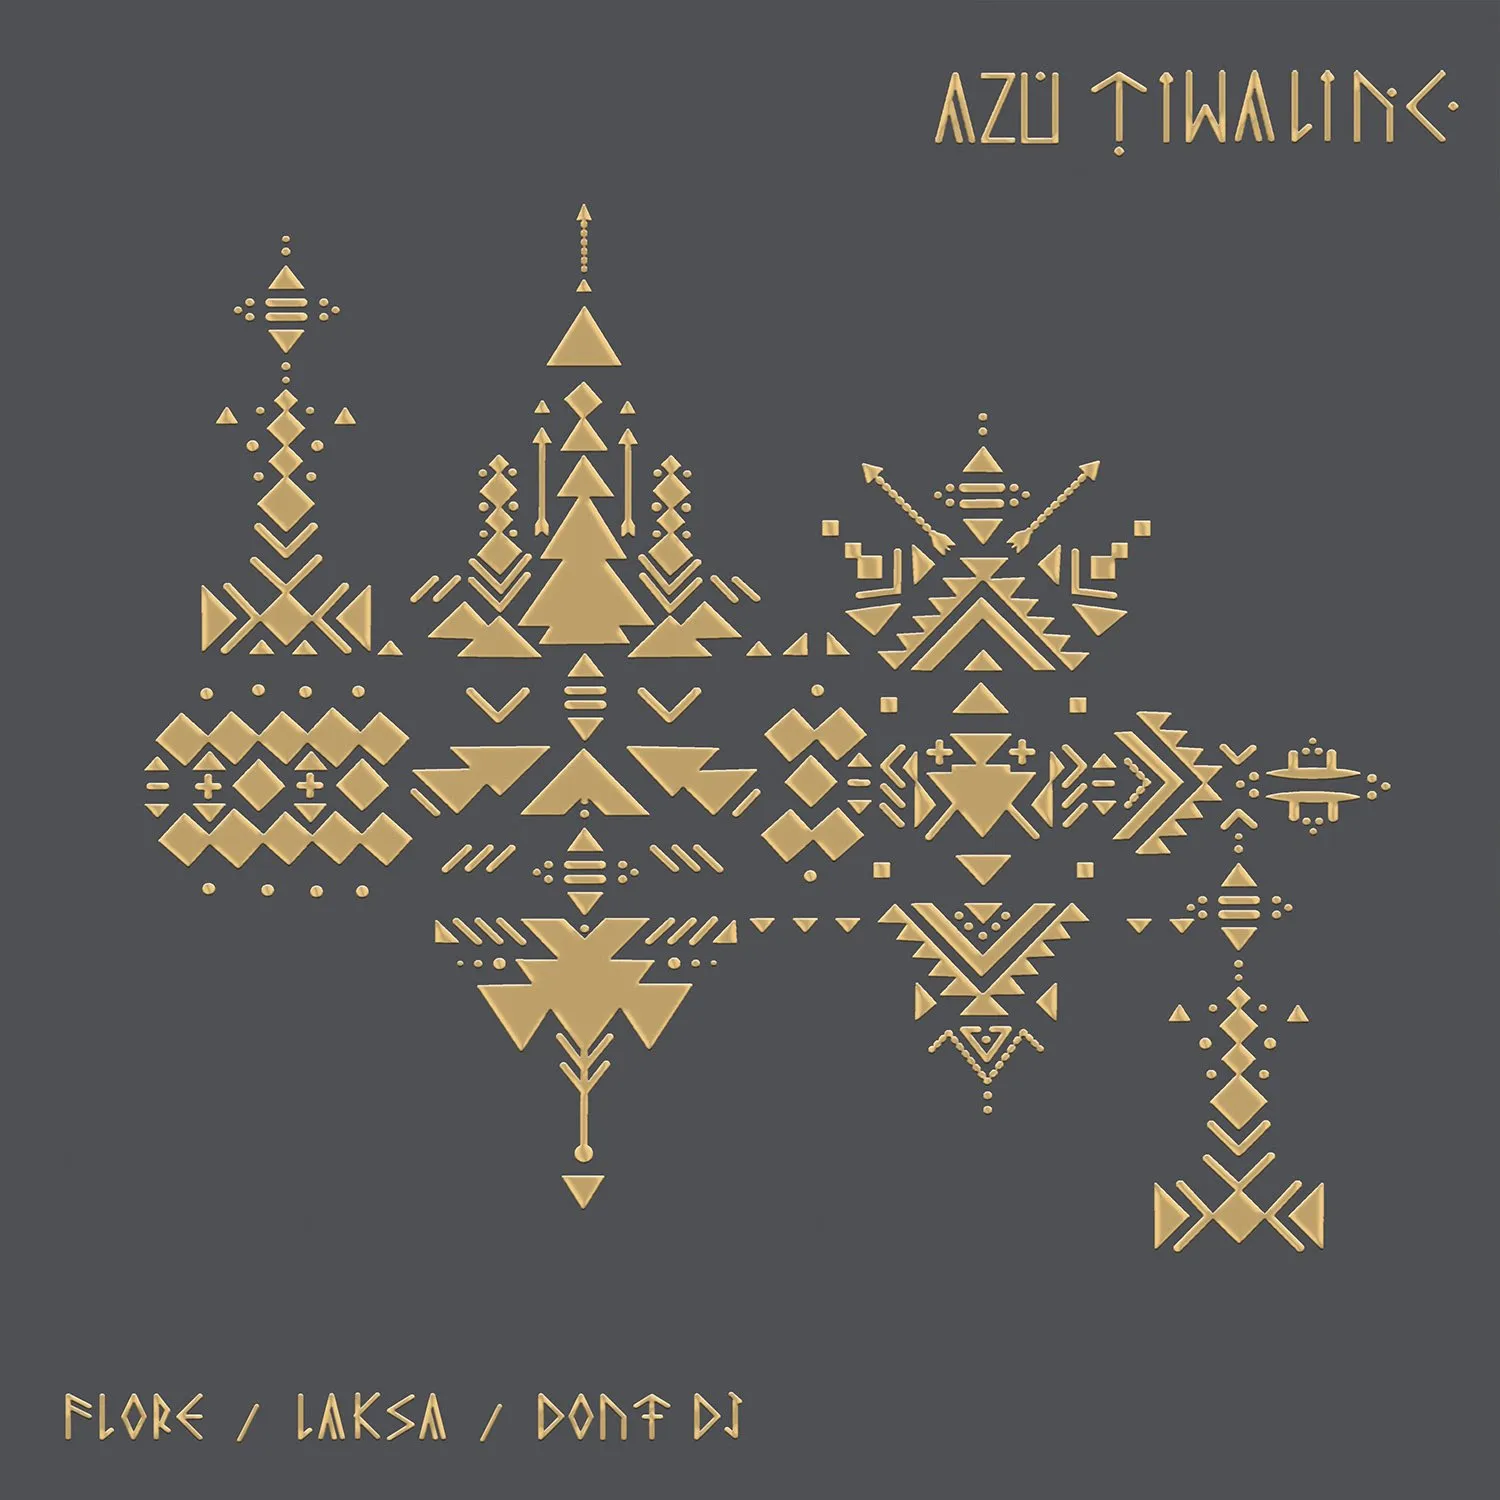 Azu Tiwaline - Draw Me a Silence Remixes (Flore, Laksa, Don't DJ) : 12inch